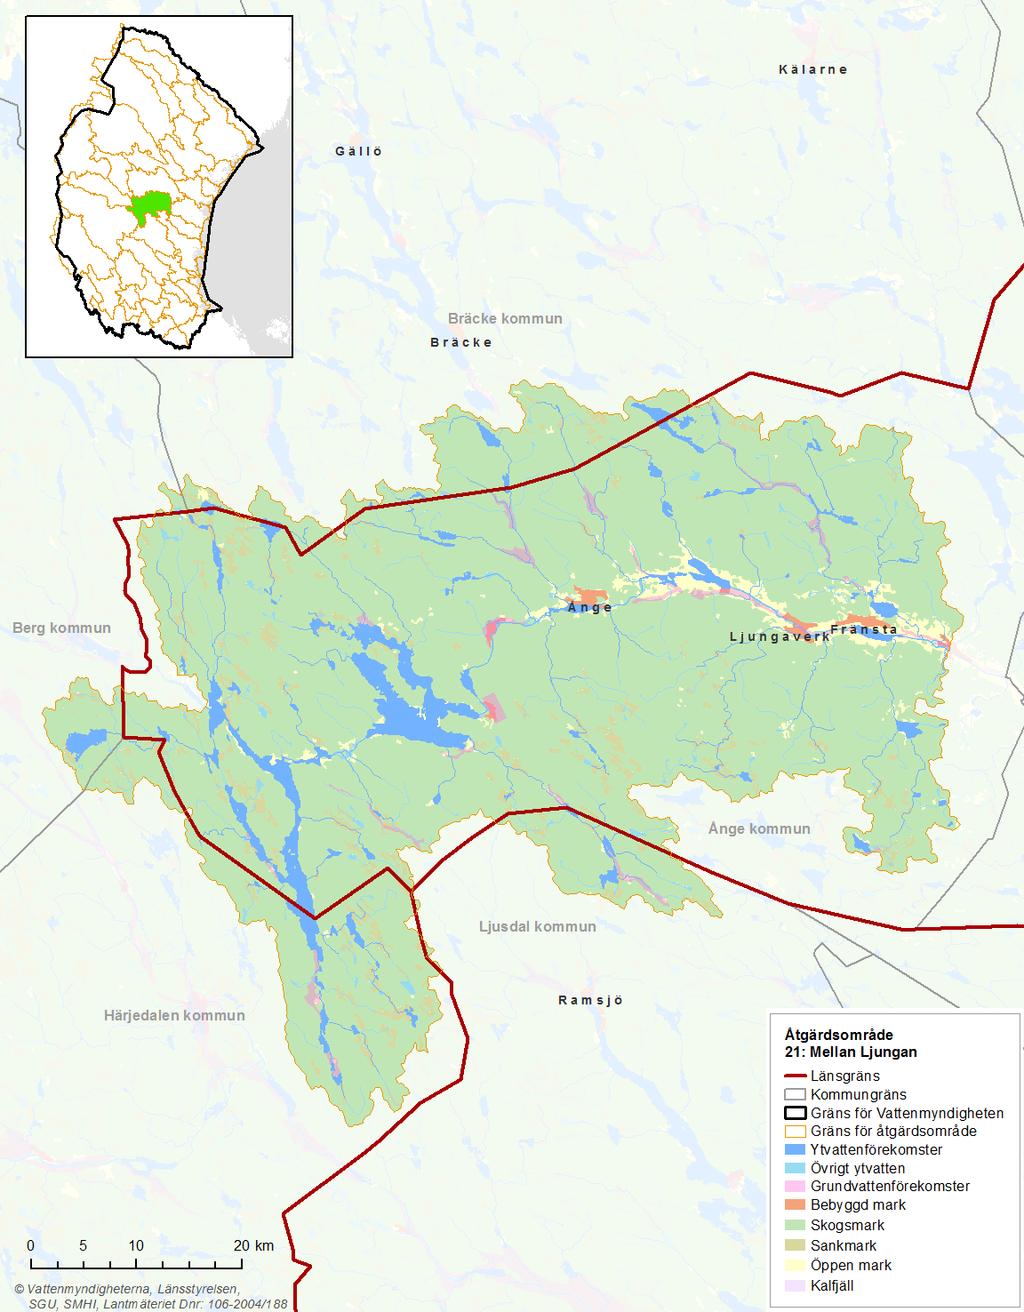 Bild 1: Kartan visar Mellan Ljungans markanvändning